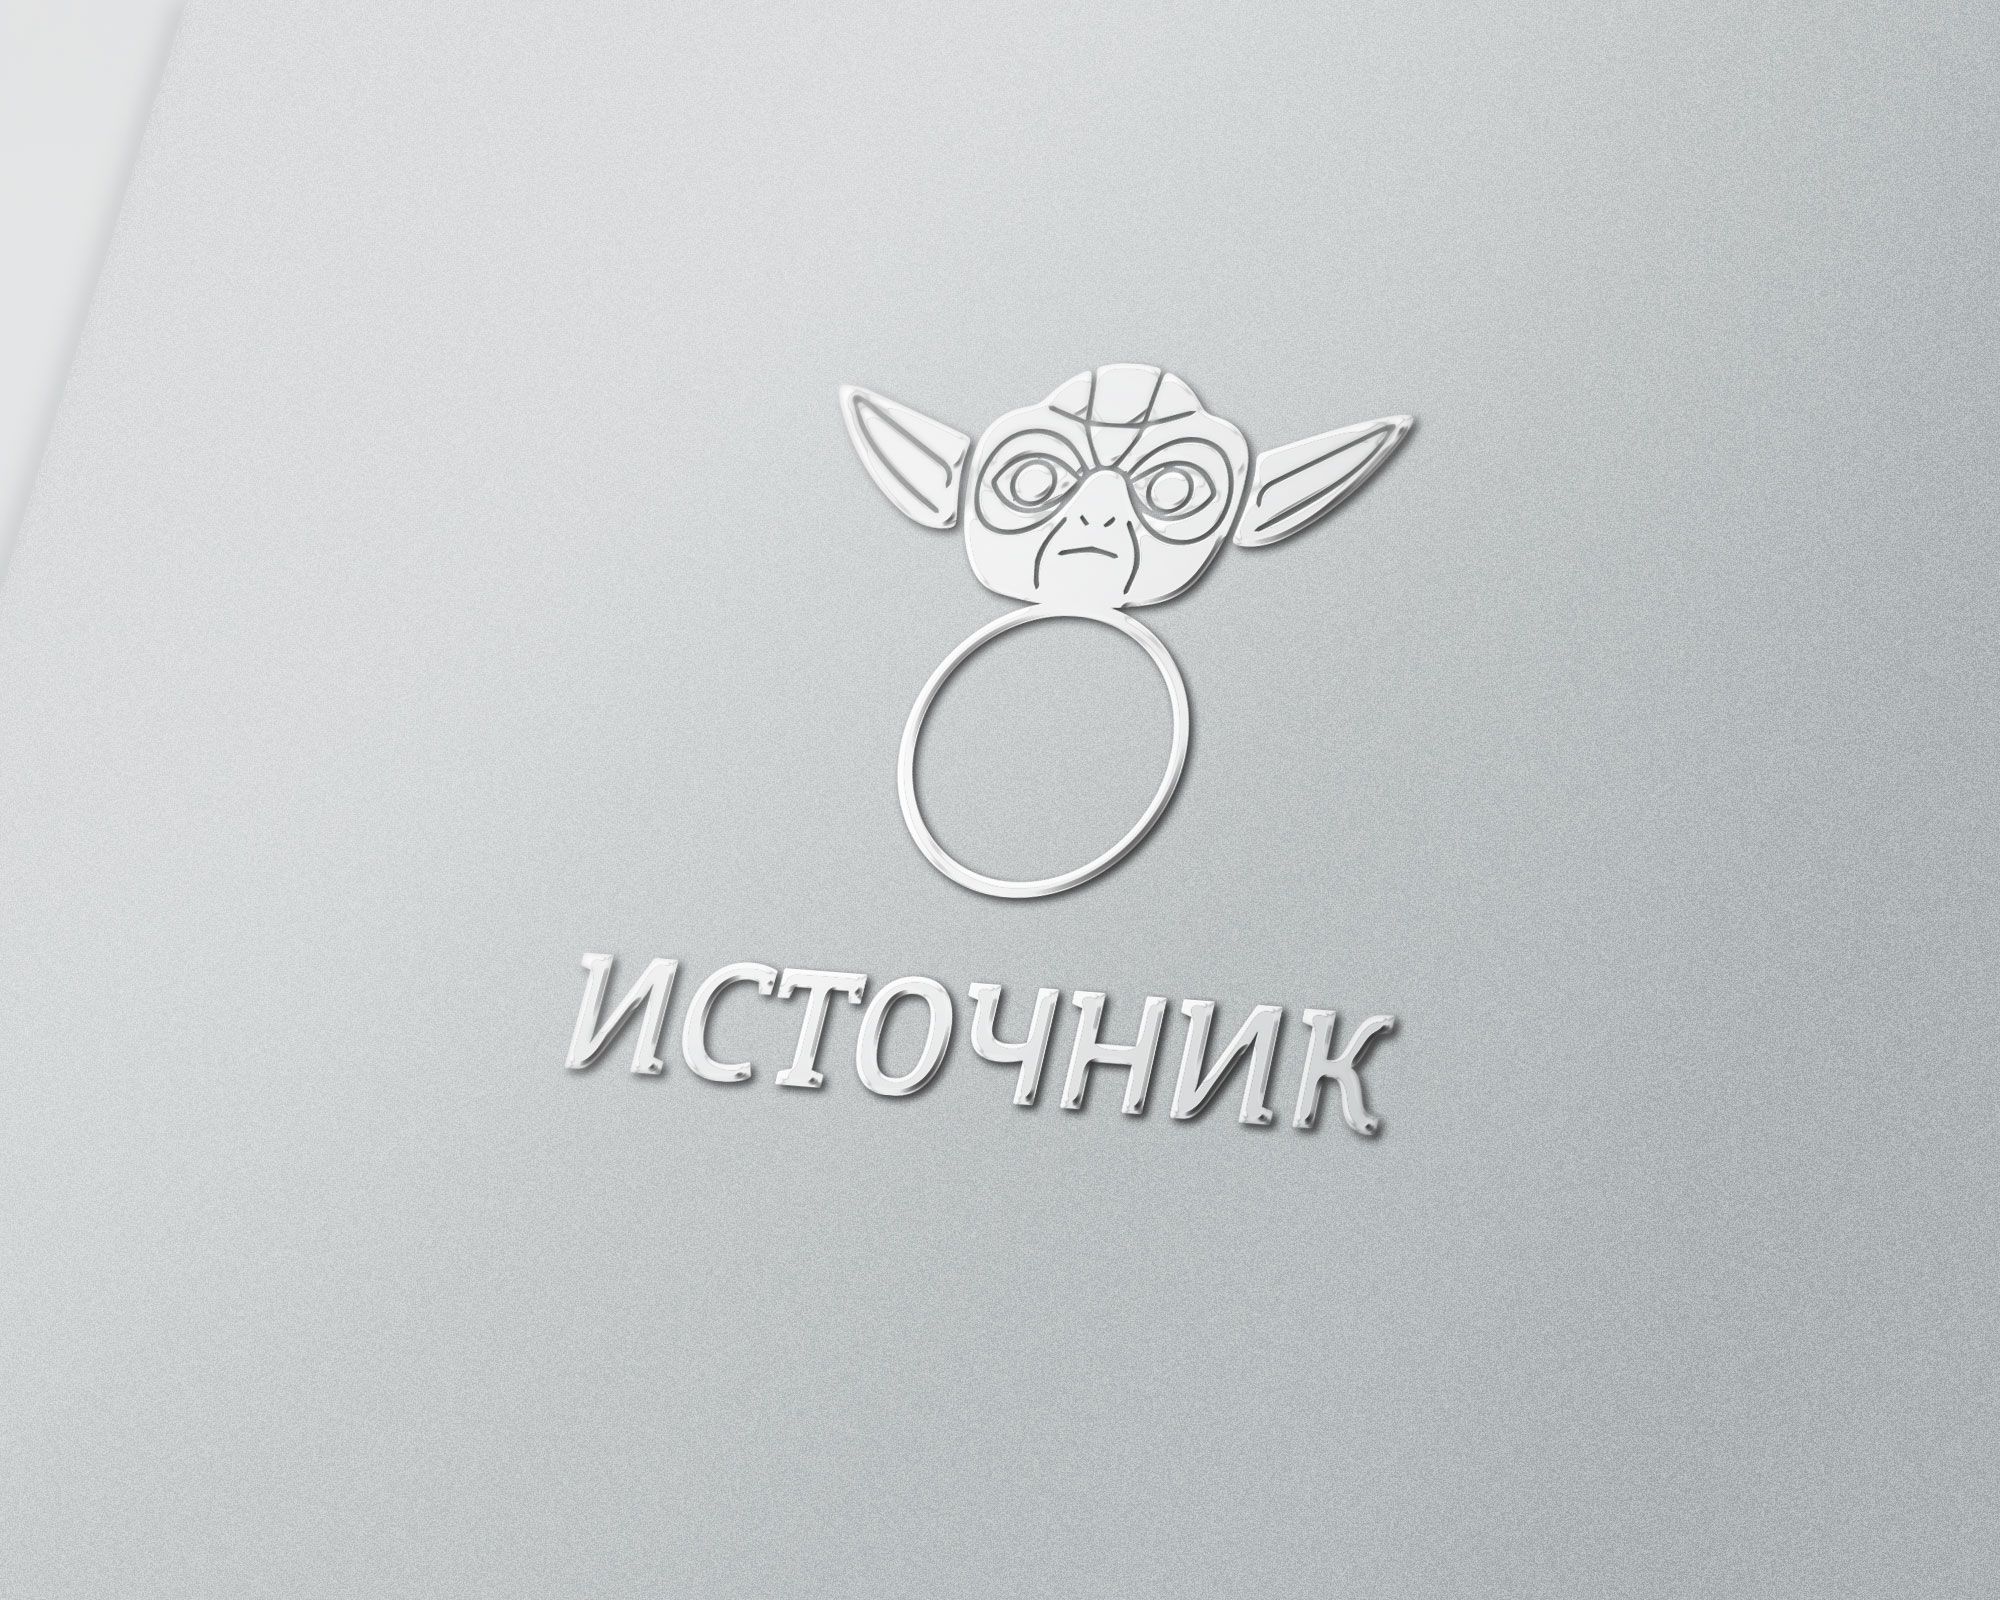 Логотип для магазина Украшений из Фильмов - дизайнер TanOK1